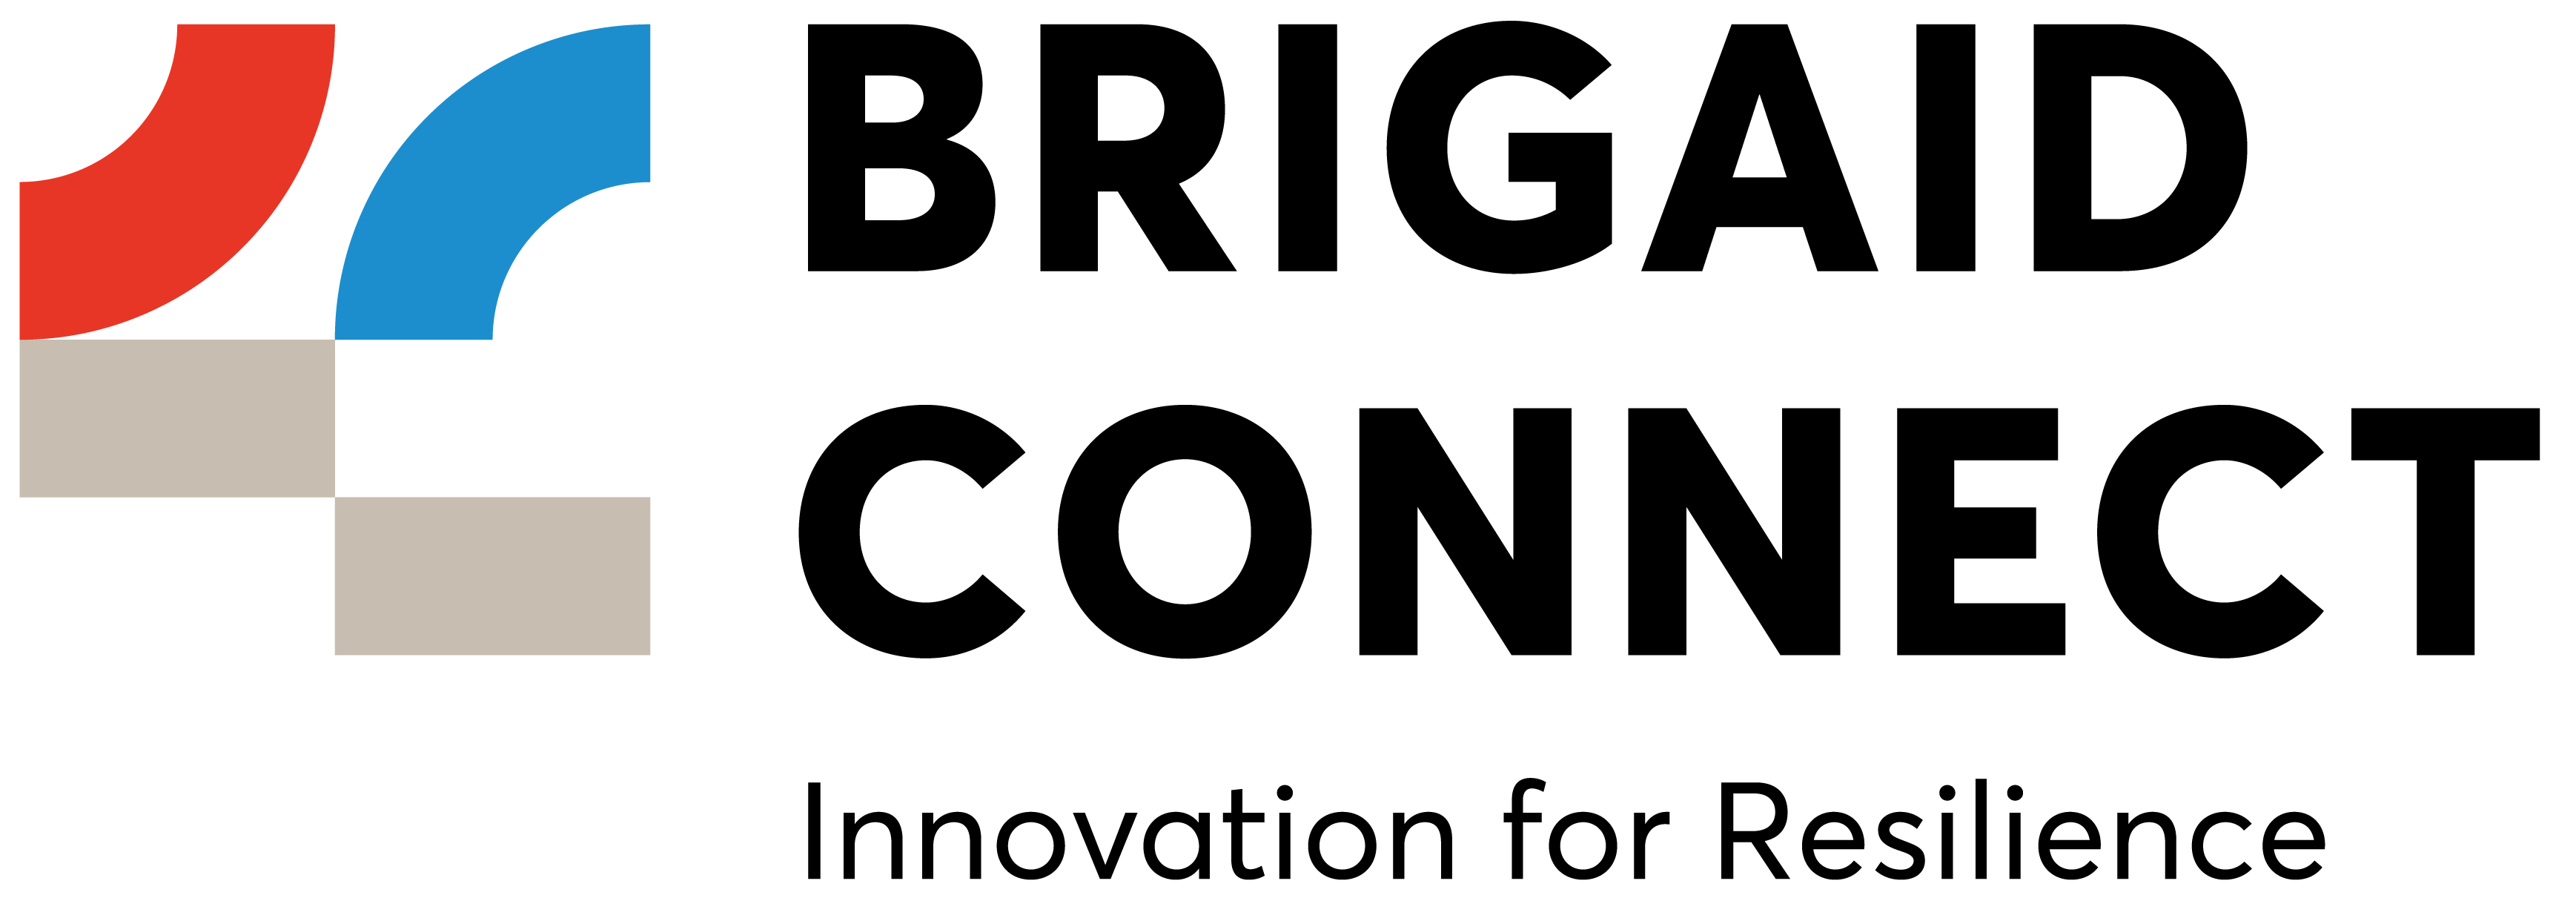 Brigaid Connect logo